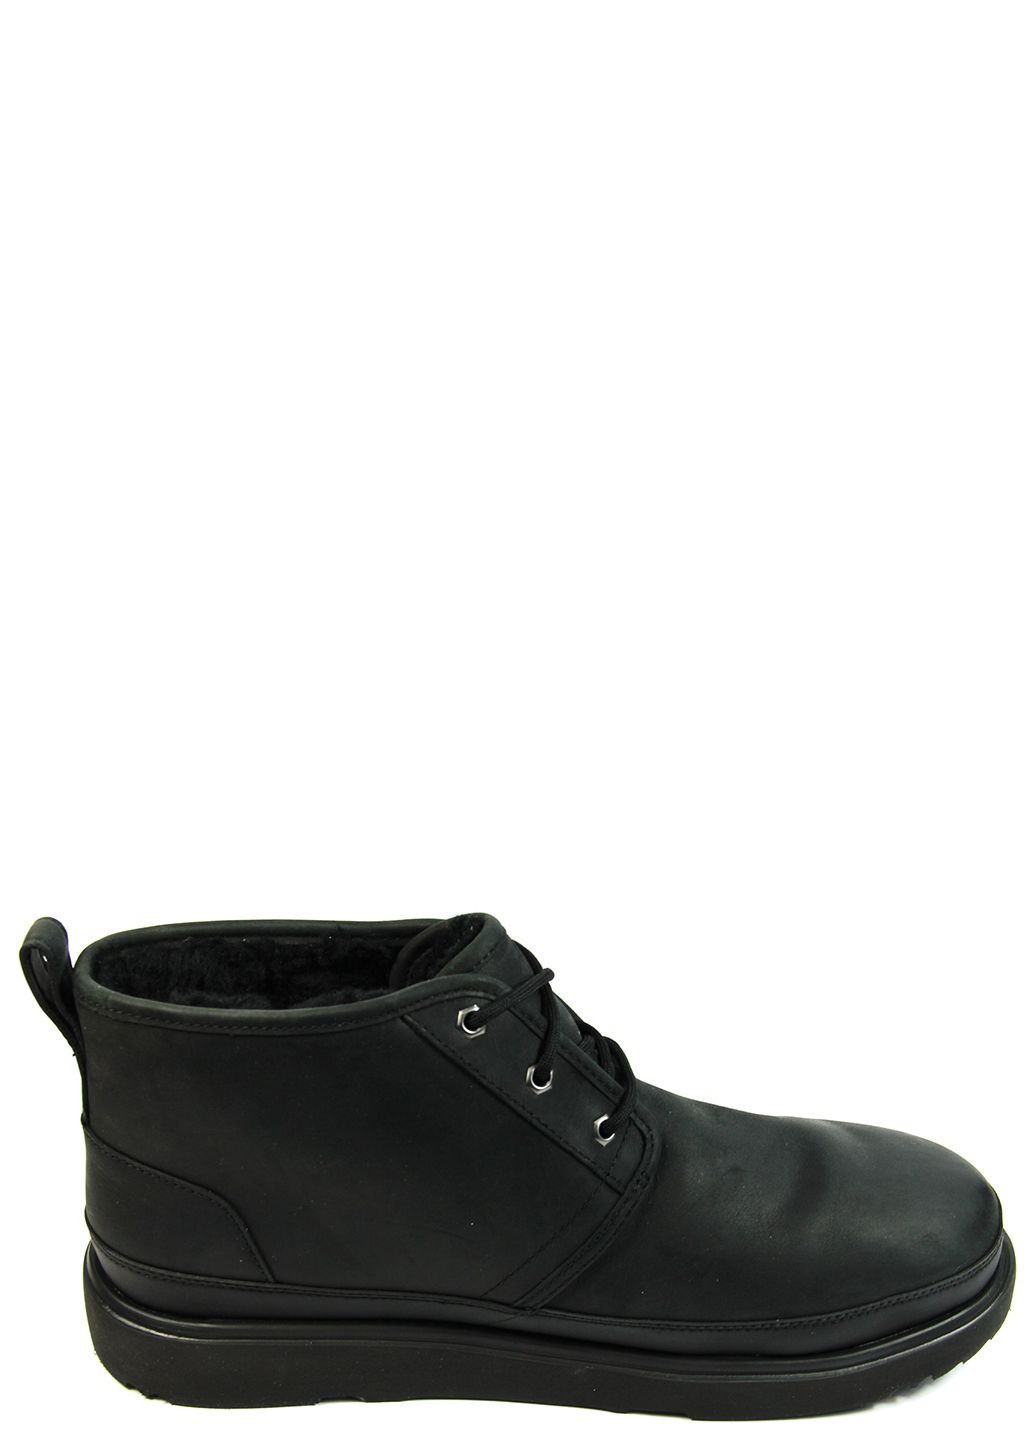 Черные зимние мужские ботинки neumel weather ii 1120851 UGG